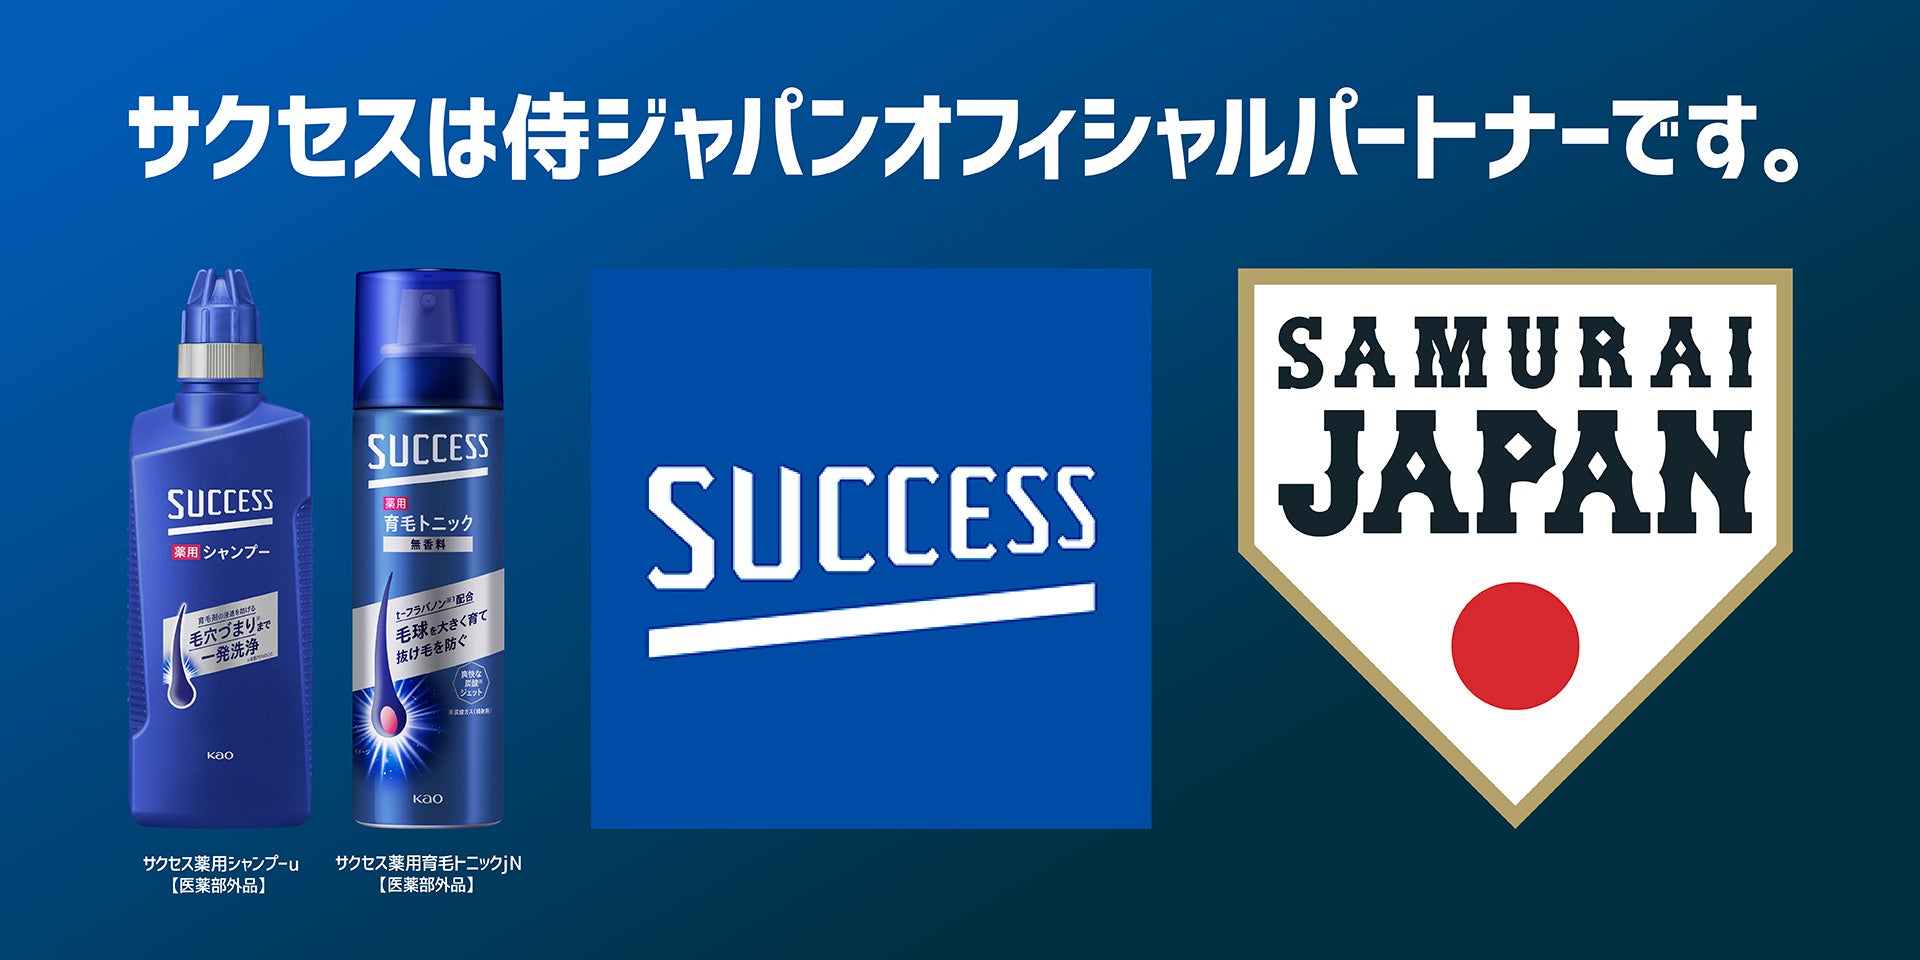 花王サクセスが野球日本代表「侍ジャパン」のオフィシャルパートナーに決定